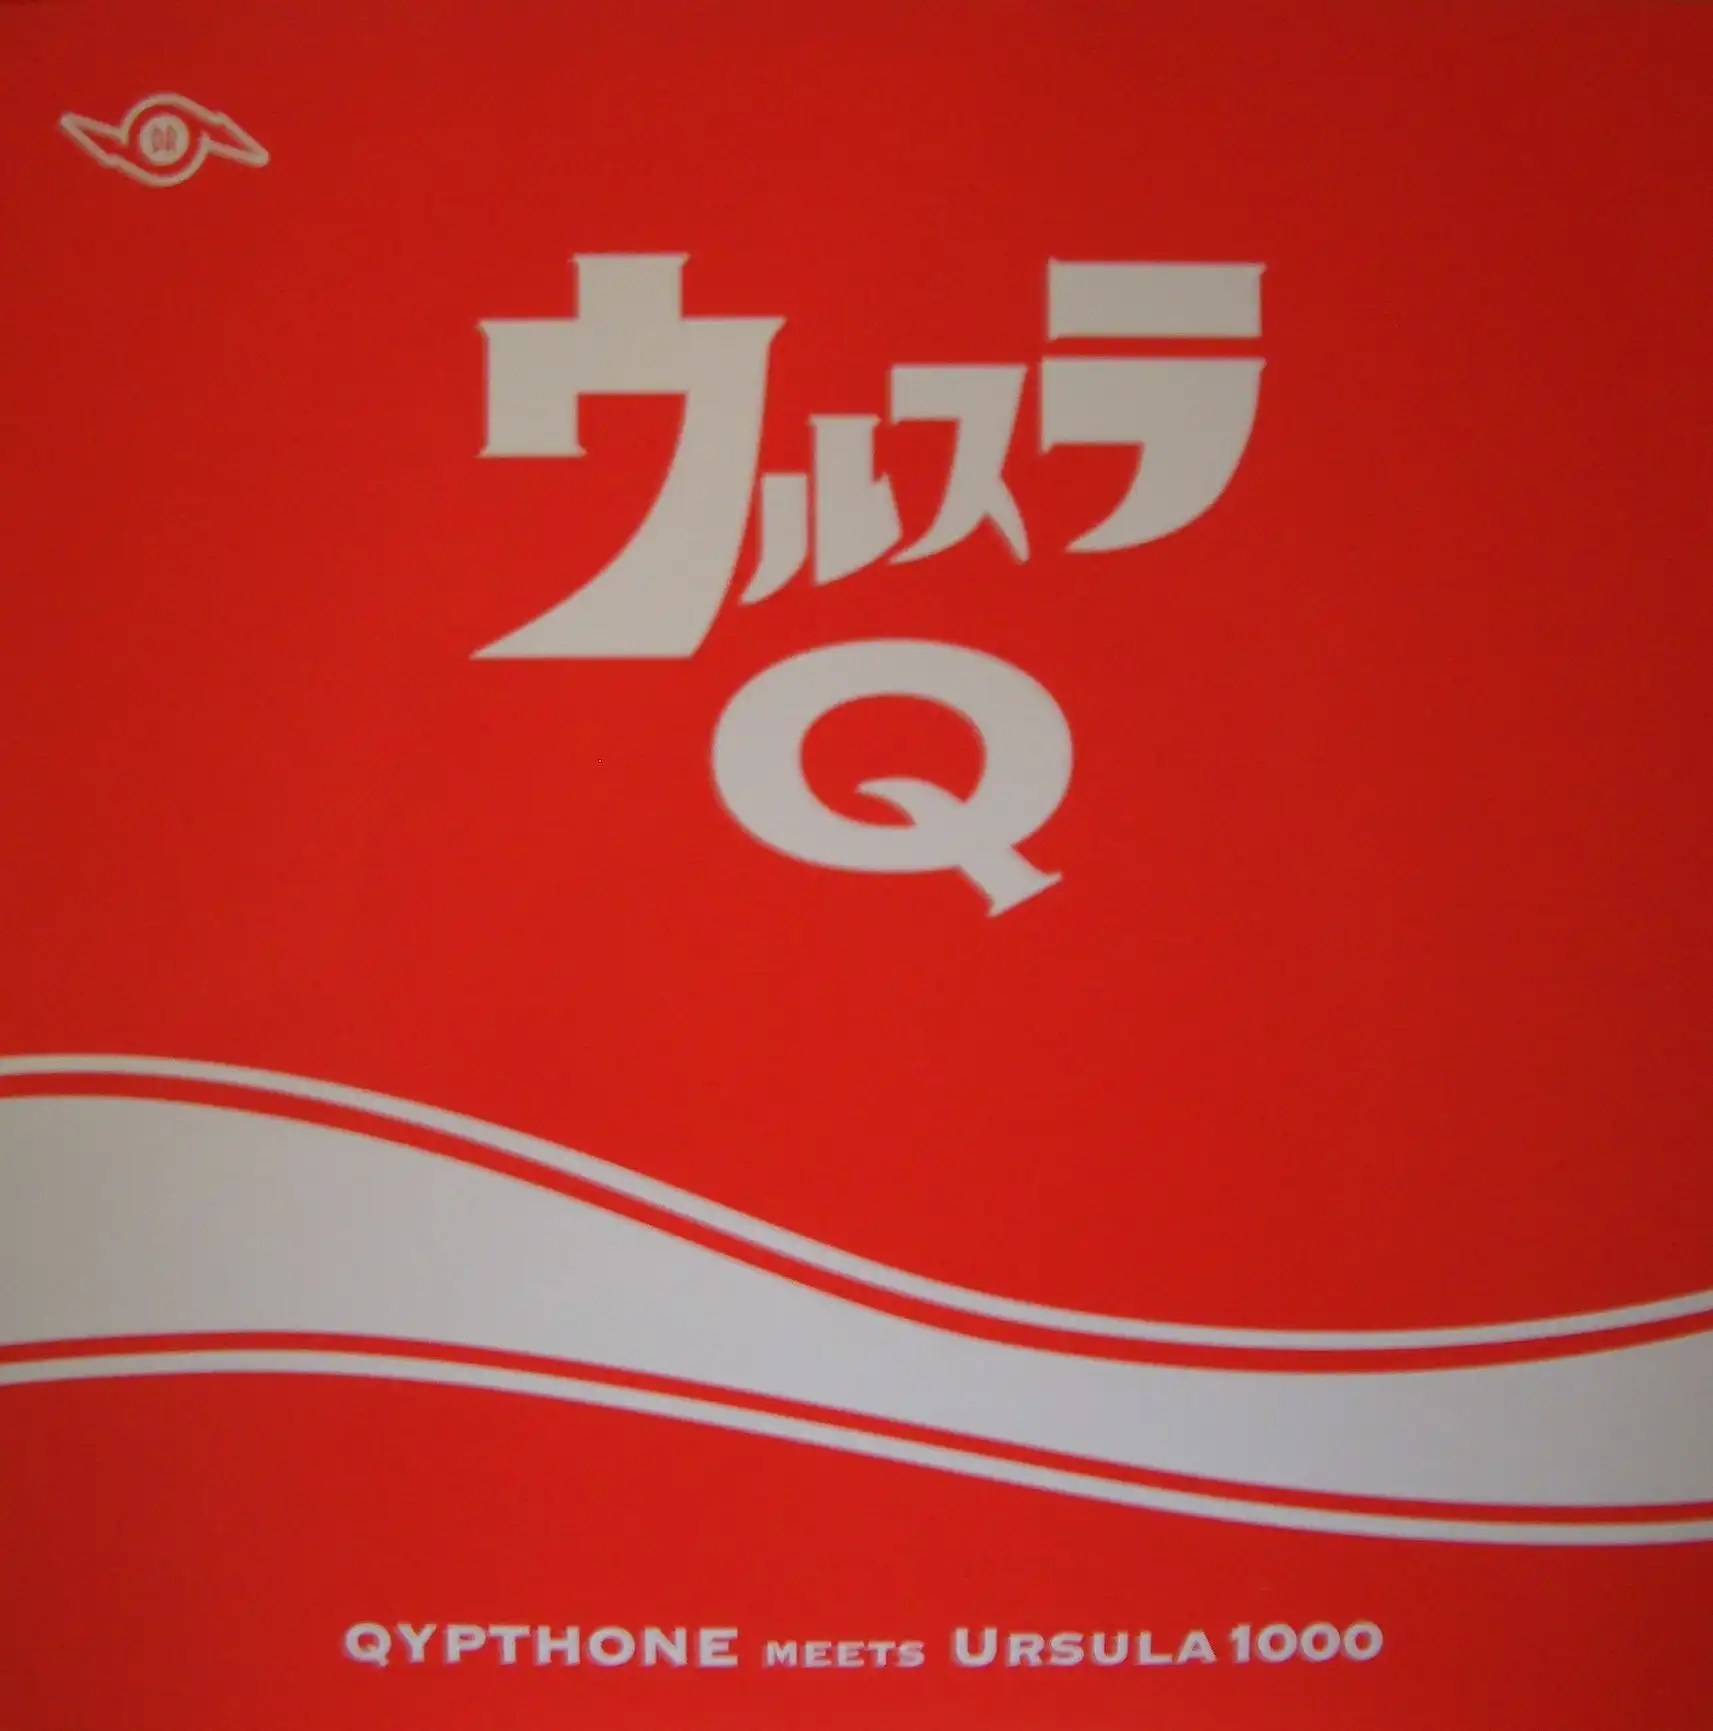 QYPTHONE meets URSULA 1000 / 륹 Q